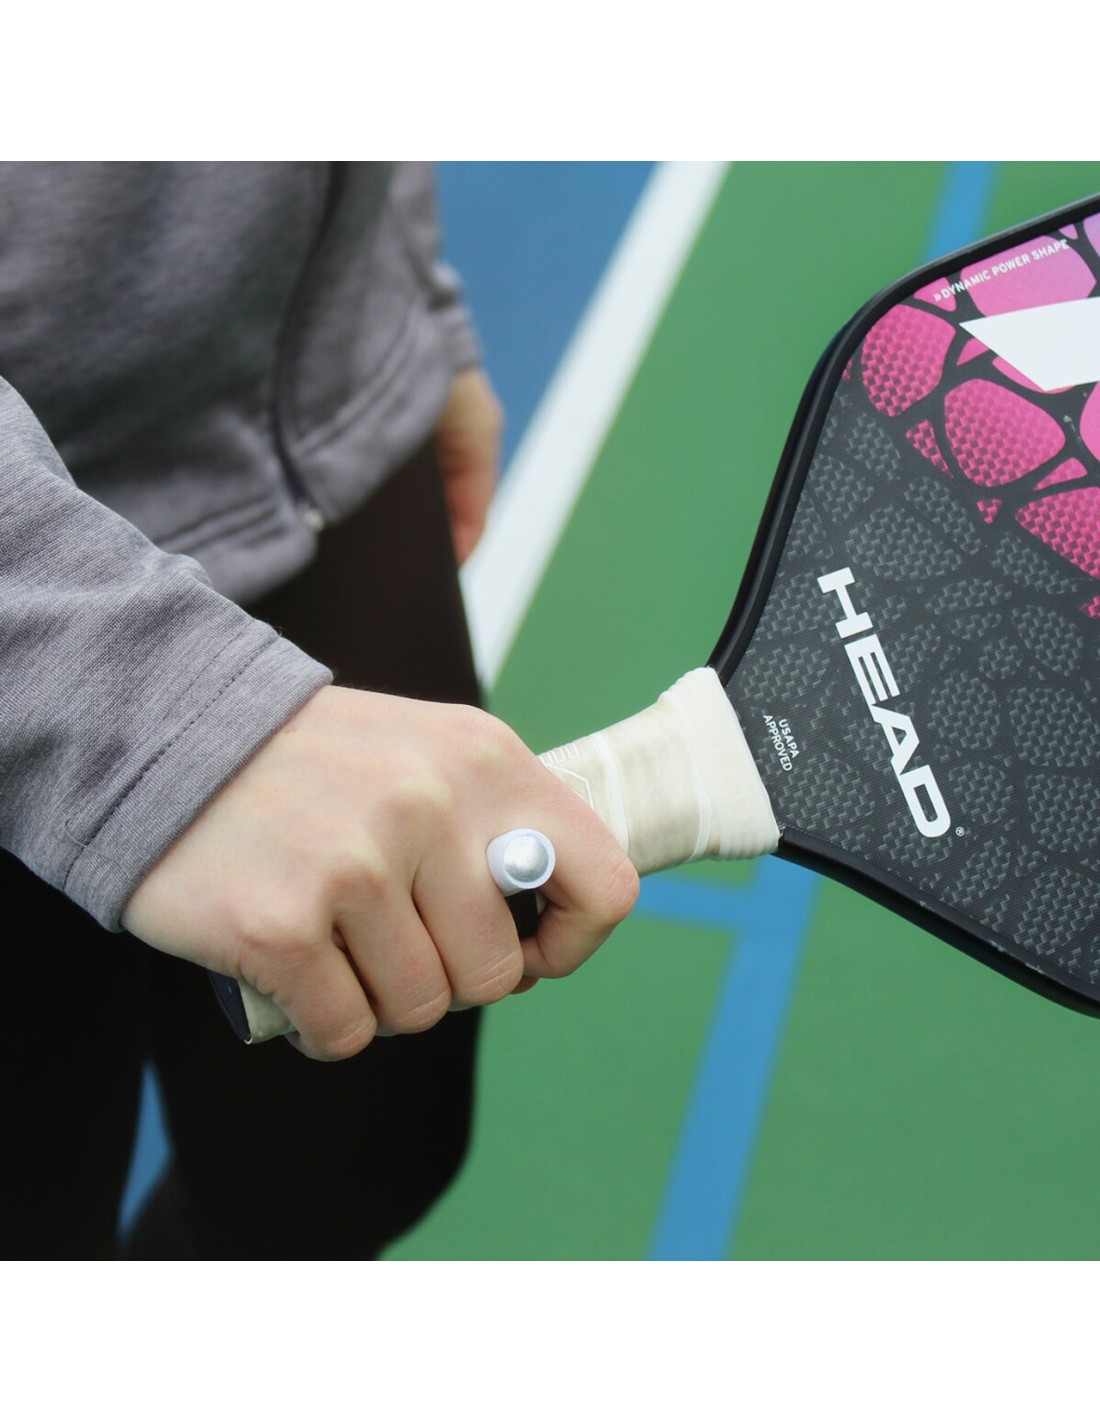 Cómo cambiar el grip de una raqueta de tenis?